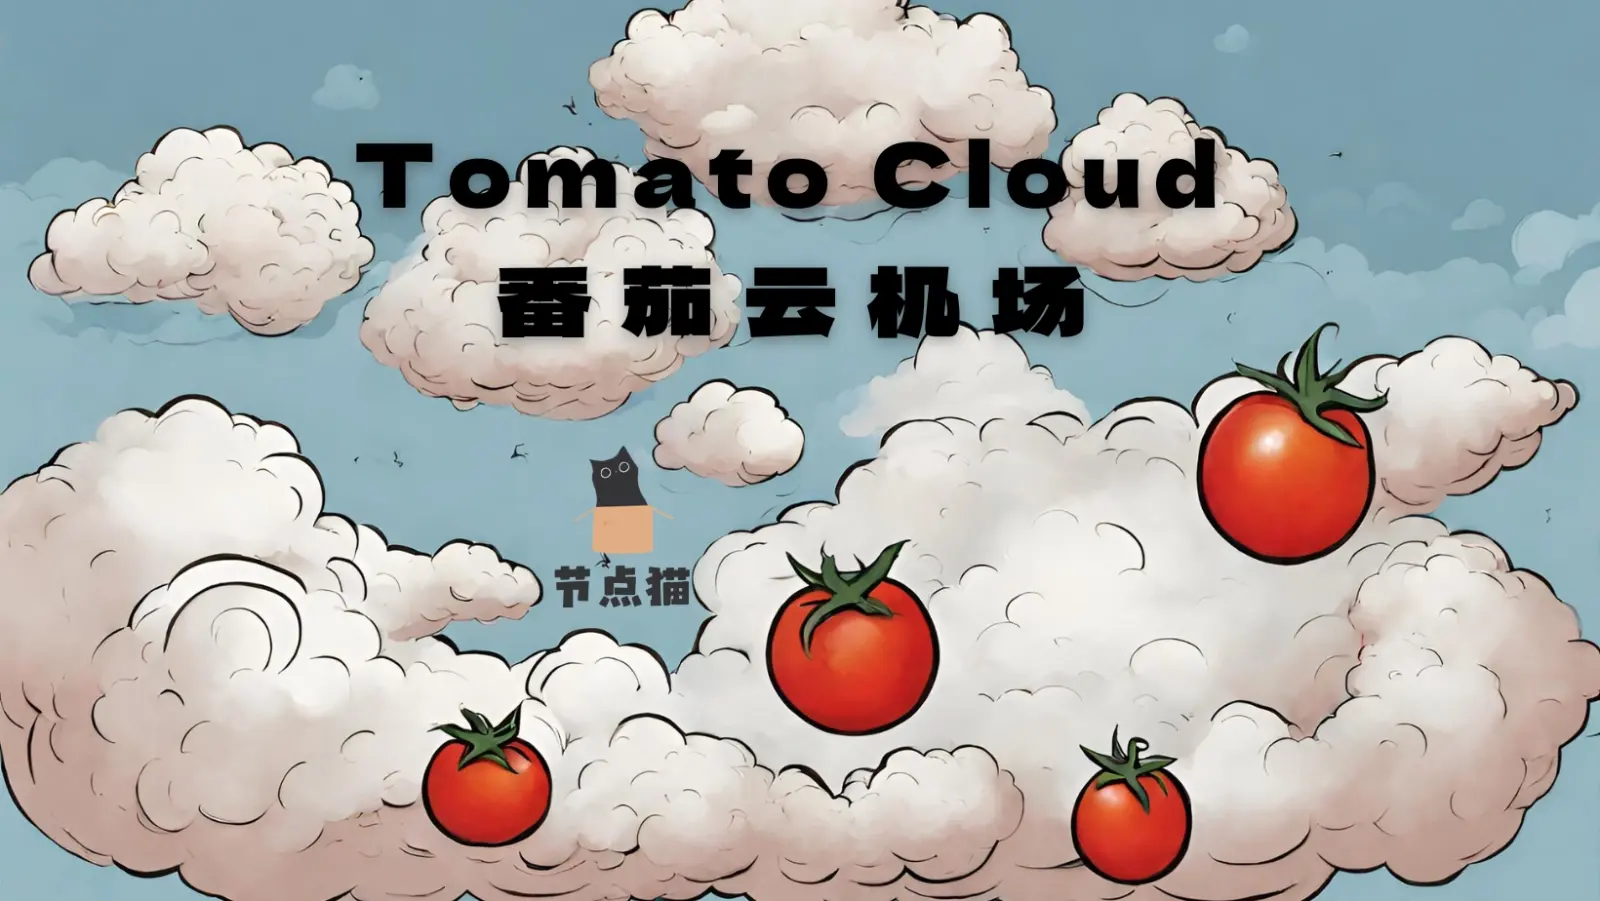 Tomato Cloud 番茄云